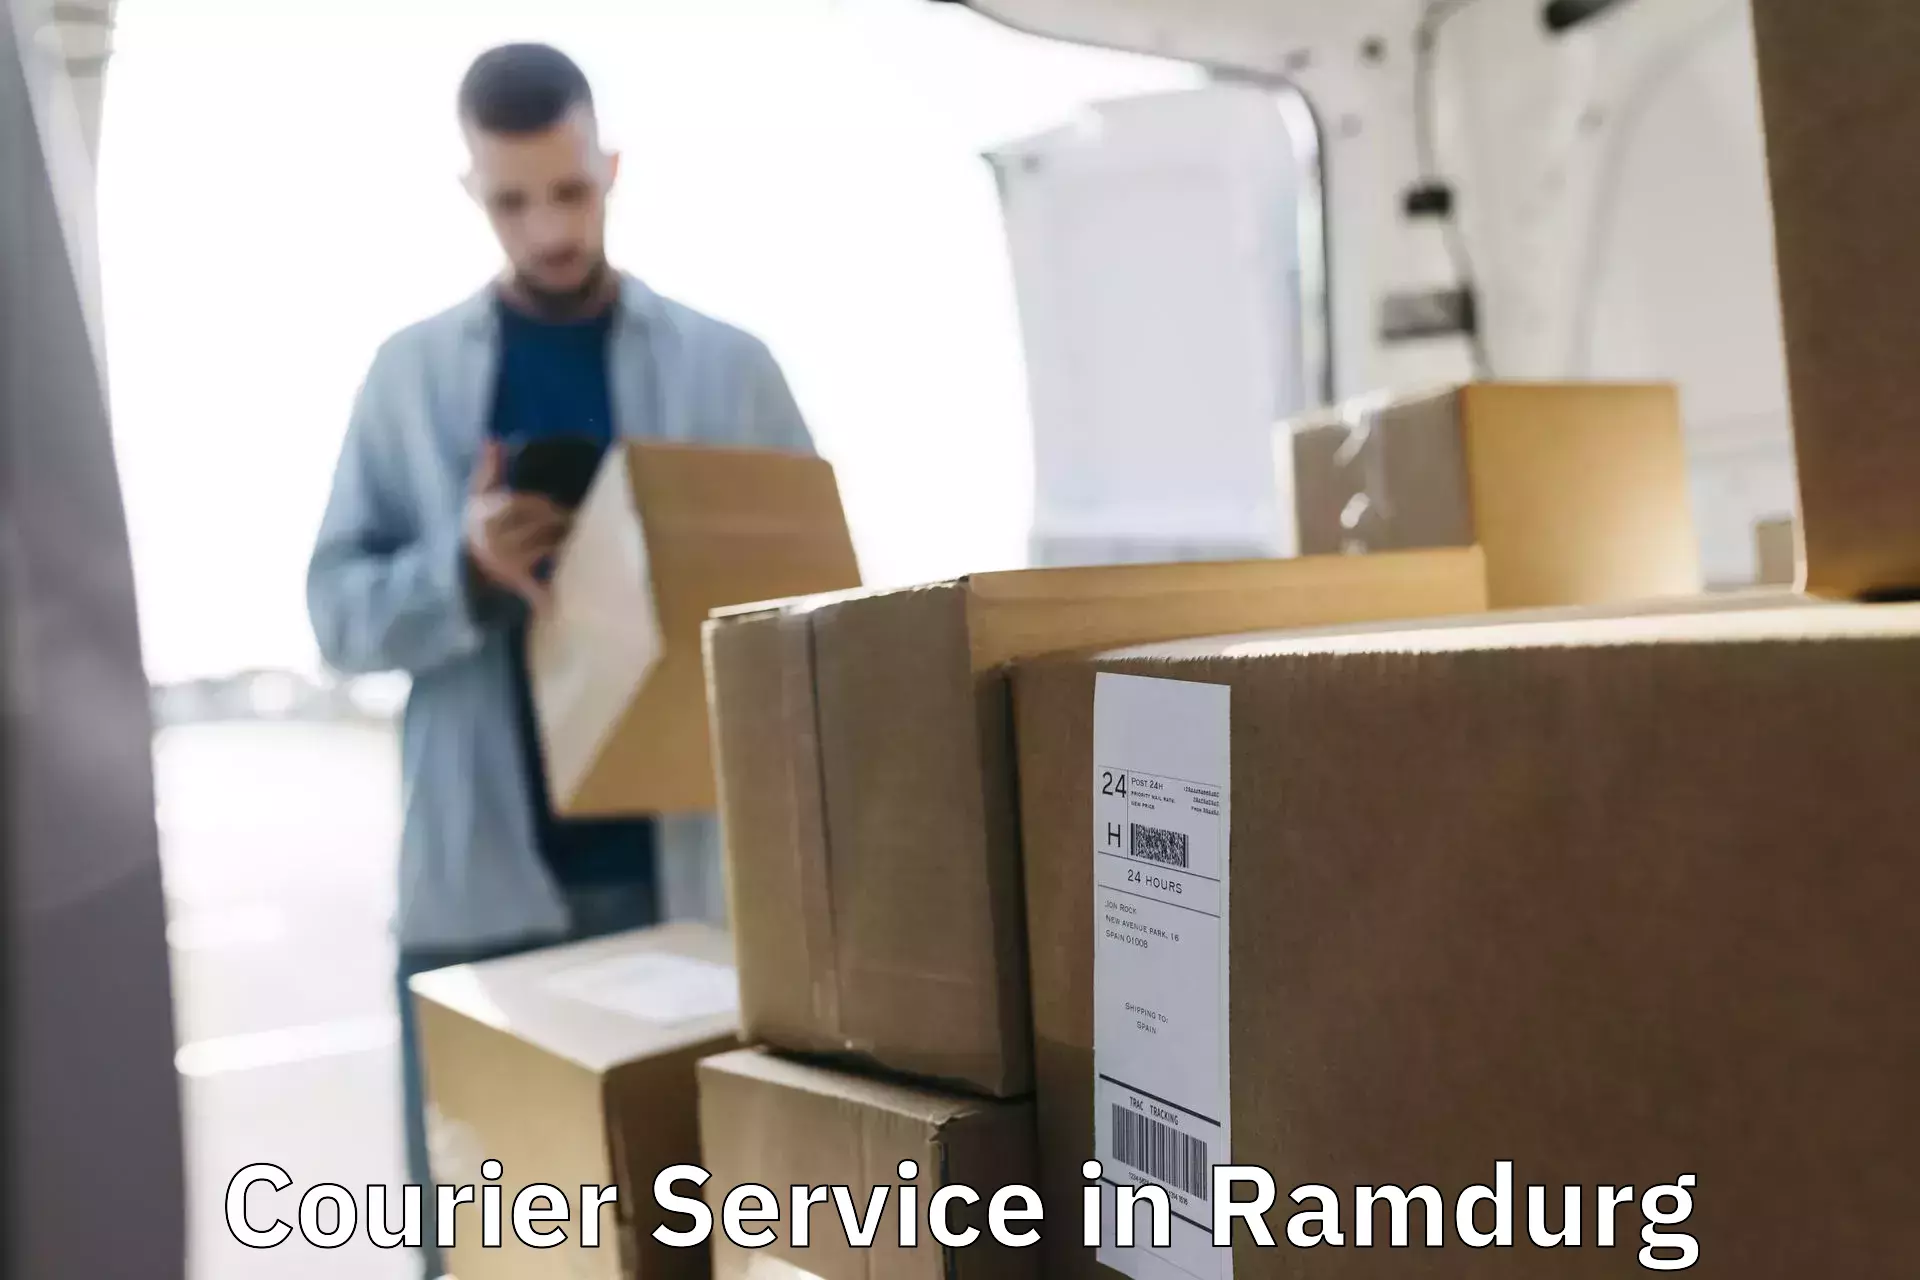 Express postal services in Ramdurg